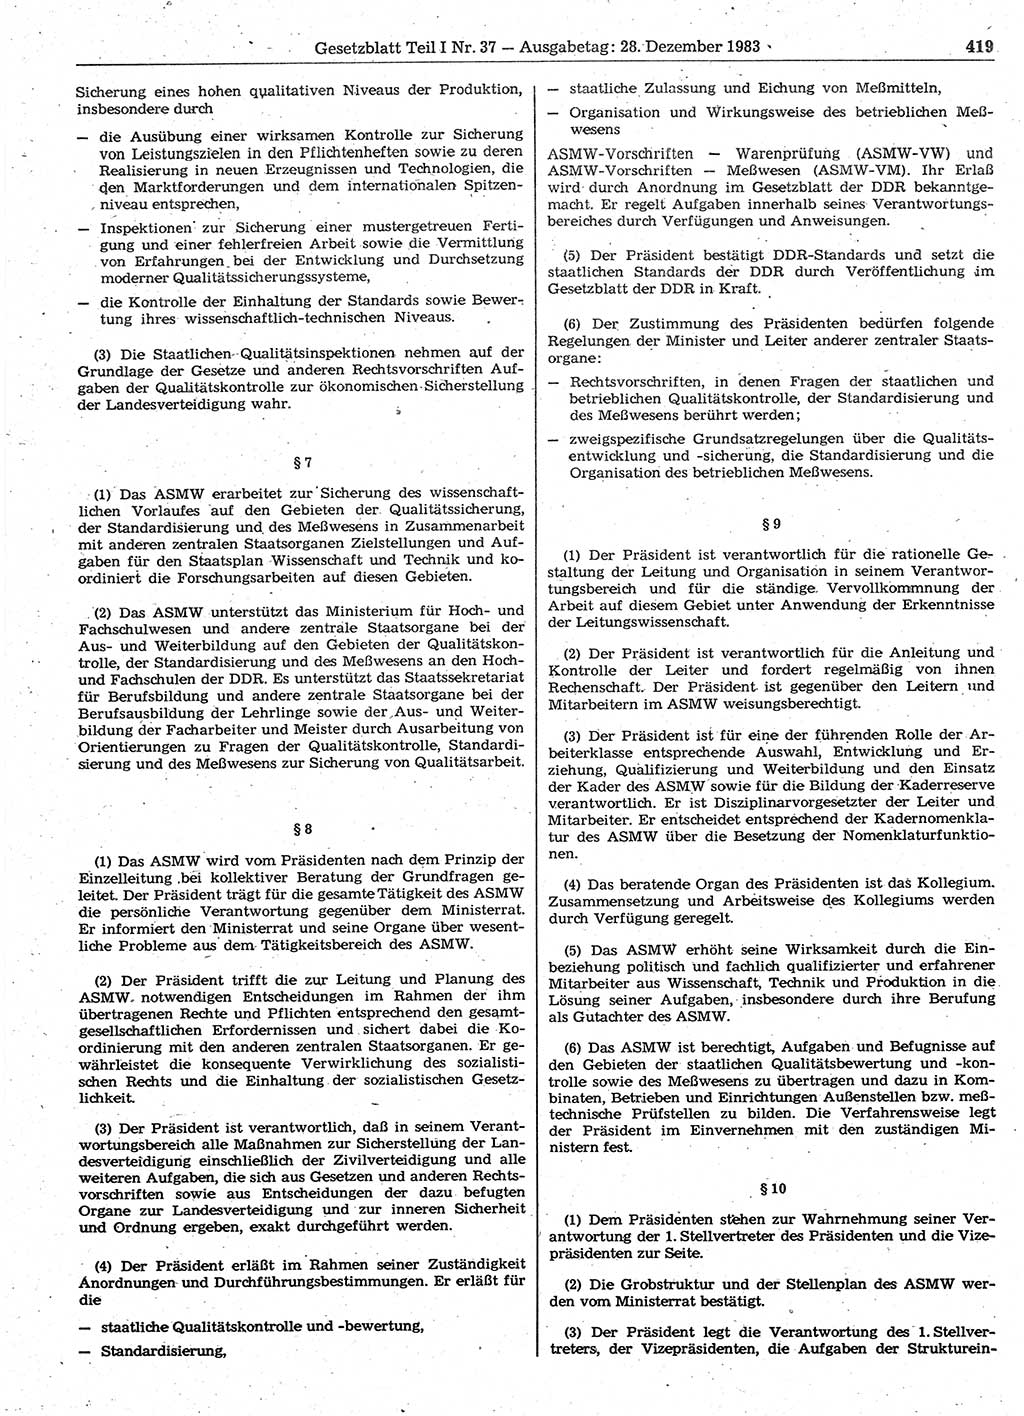 Gesetzblatt (GBl.) der Deutschen Demokratischen Republik (DDR) Teil Ⅰ 1983, Seite 419 (GBl. DDR Ⅰ 1983, S. 419)